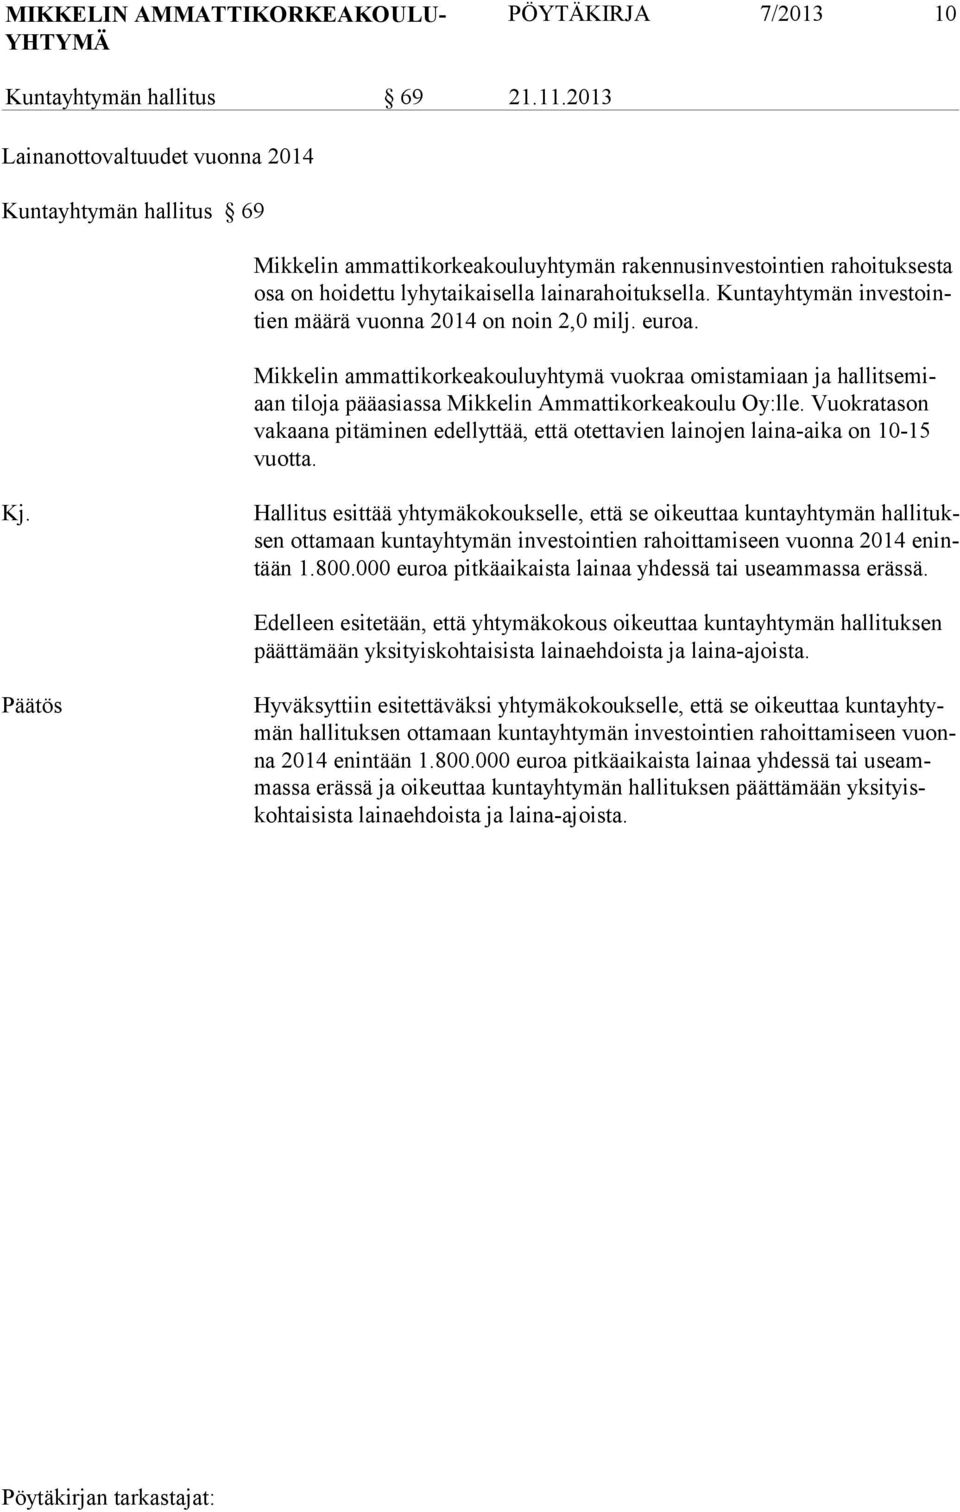 Kuntayhtymän investointien määrä vuonna 2014 on noin 2,0 milj. euroa. Mikkelin ammattikorkeakouluyhtymä vuokraa omistamiaan ja hallitsemiaan tiloja pääasiassa Mikkelin Ammattikorkeakoulu Oy:lle.